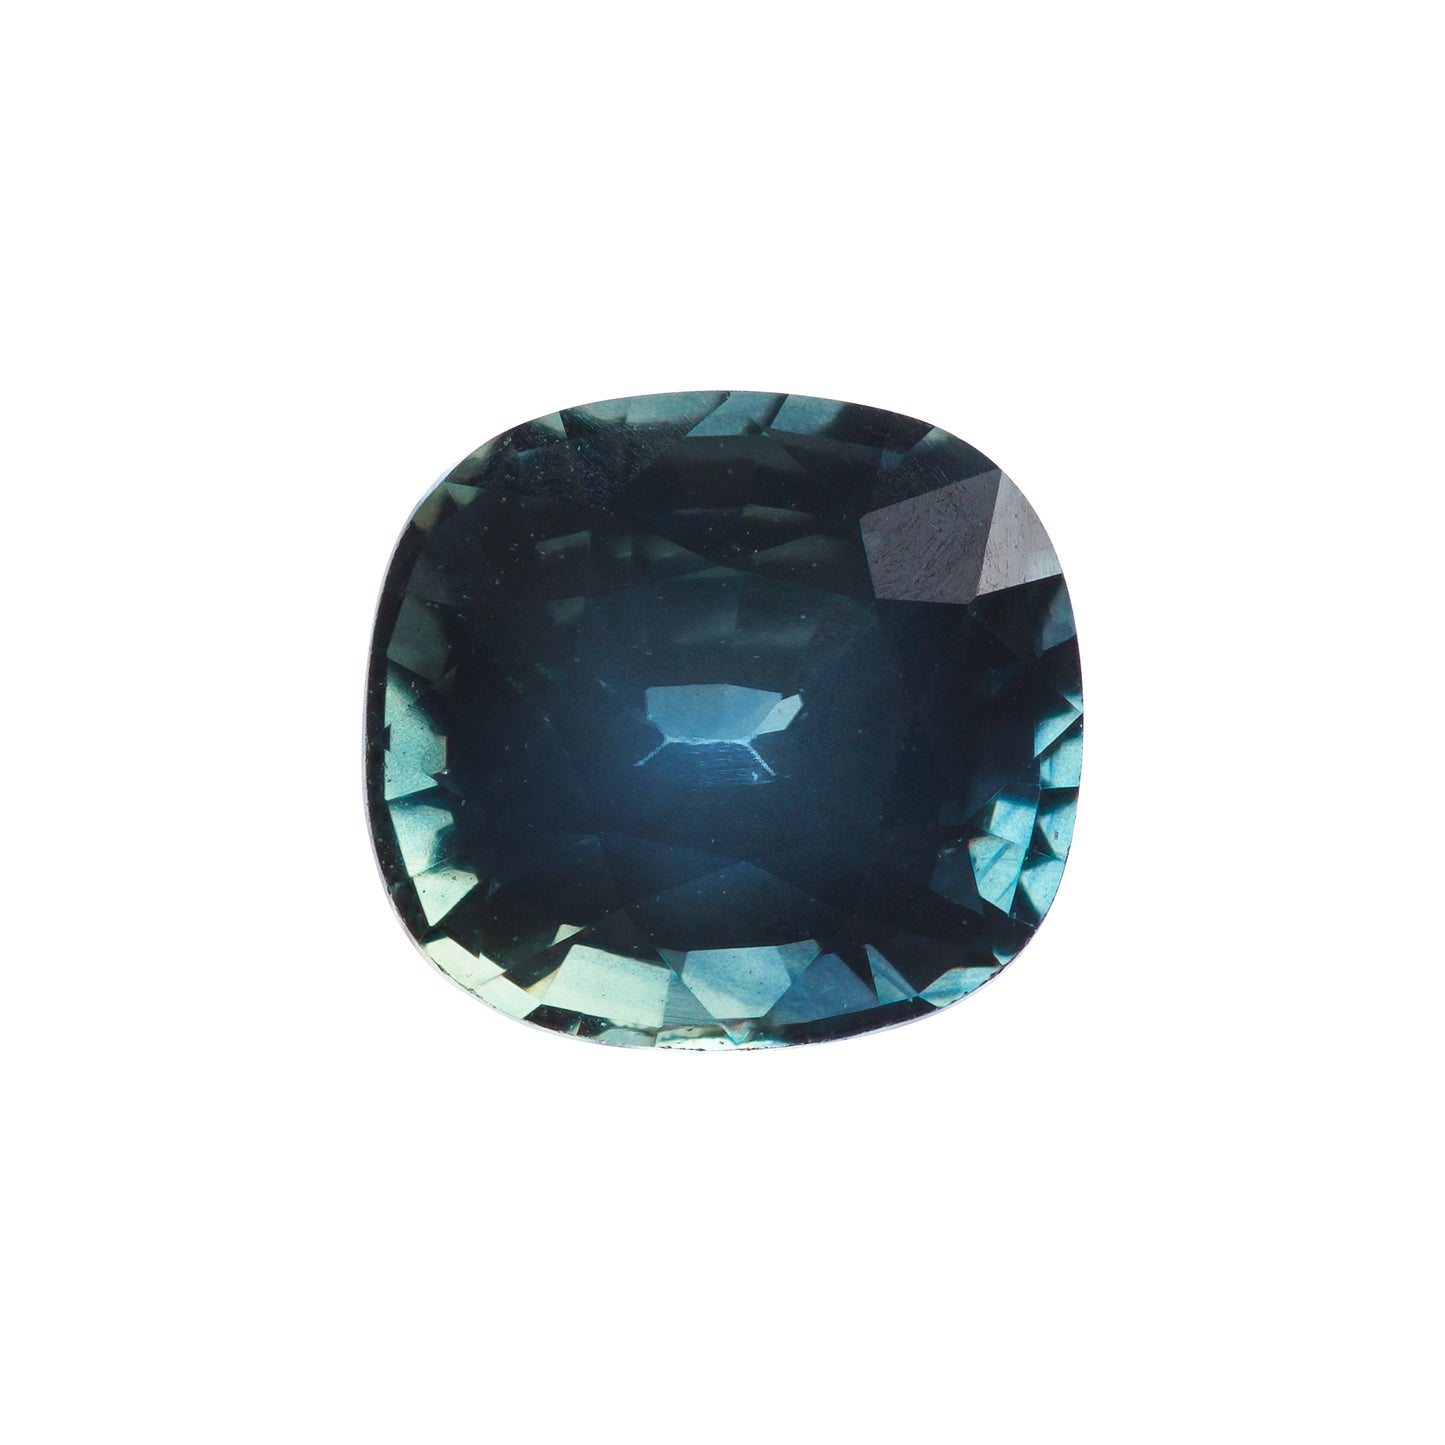 Saphir, Blau Grün, Kissen, 0,66 ct., 4,9x4,5x3,4 mm